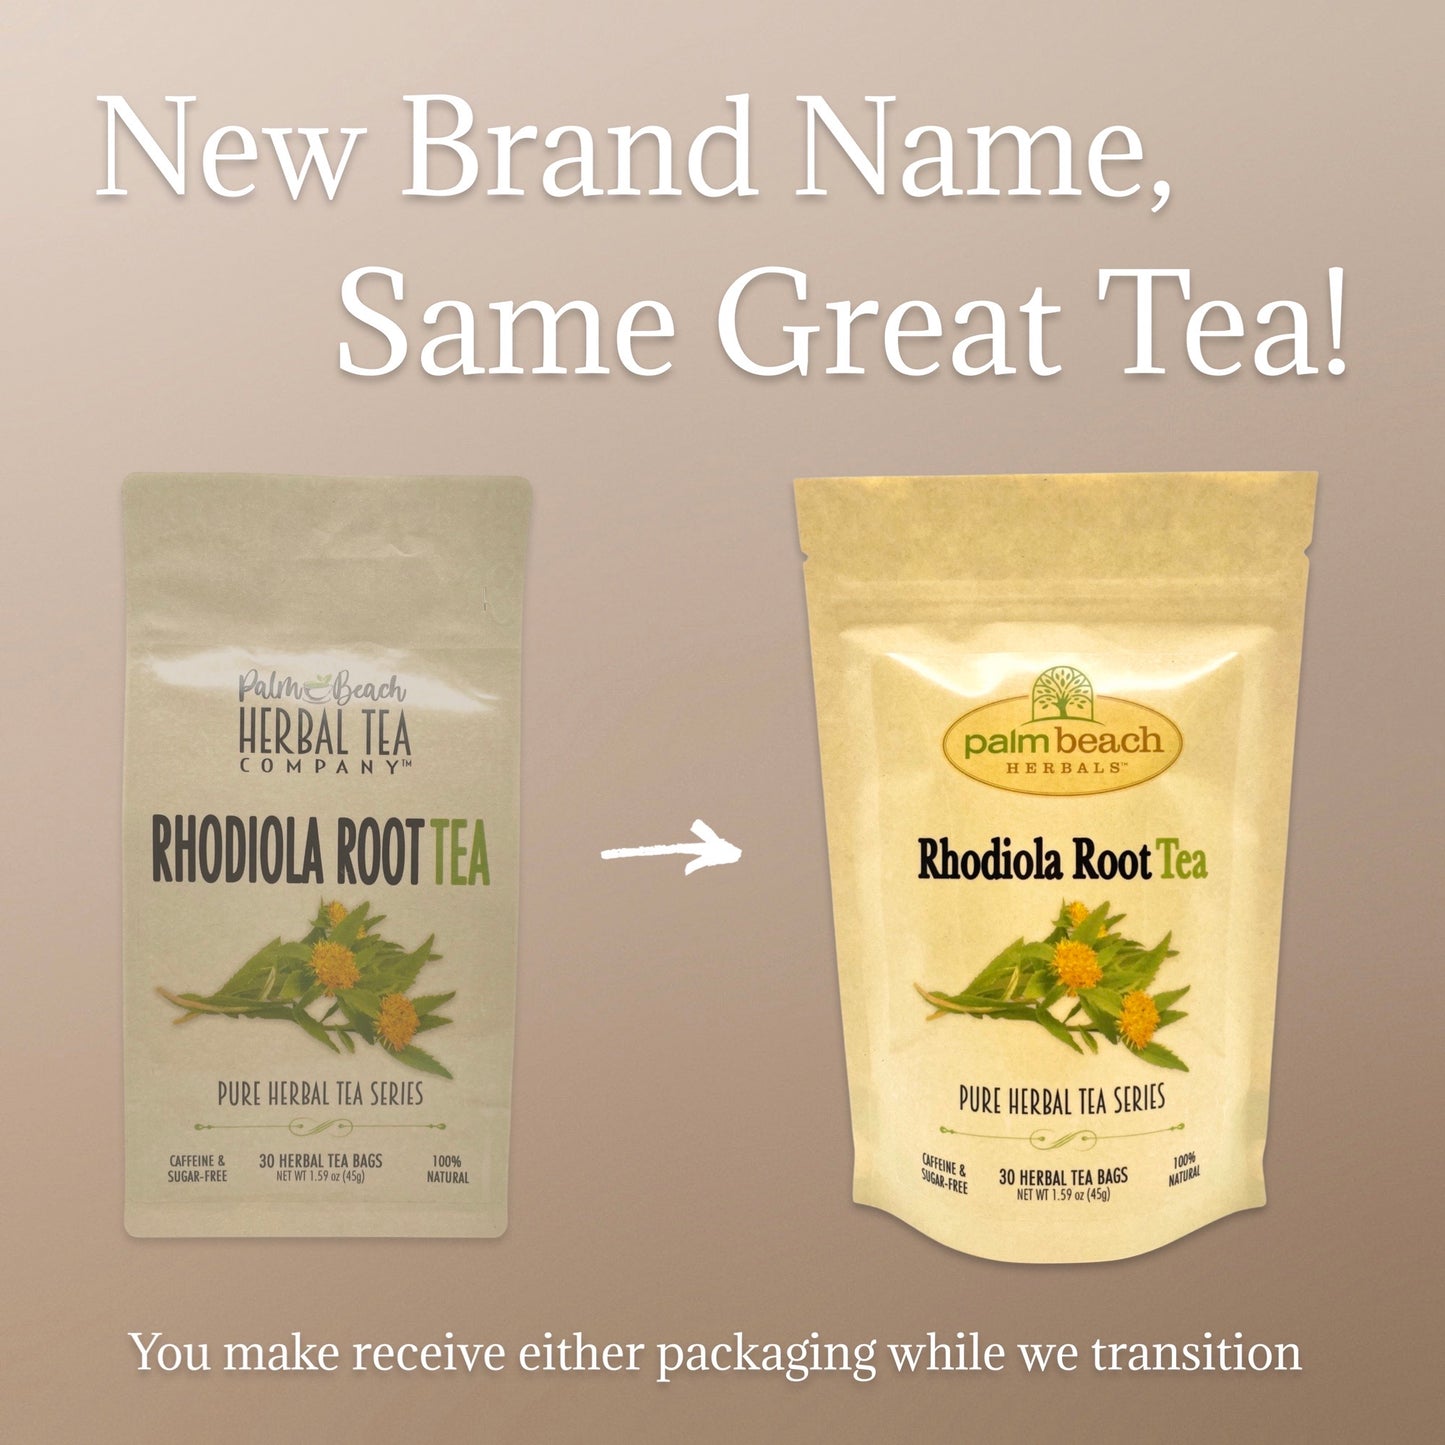 Rhodiola Root Tea